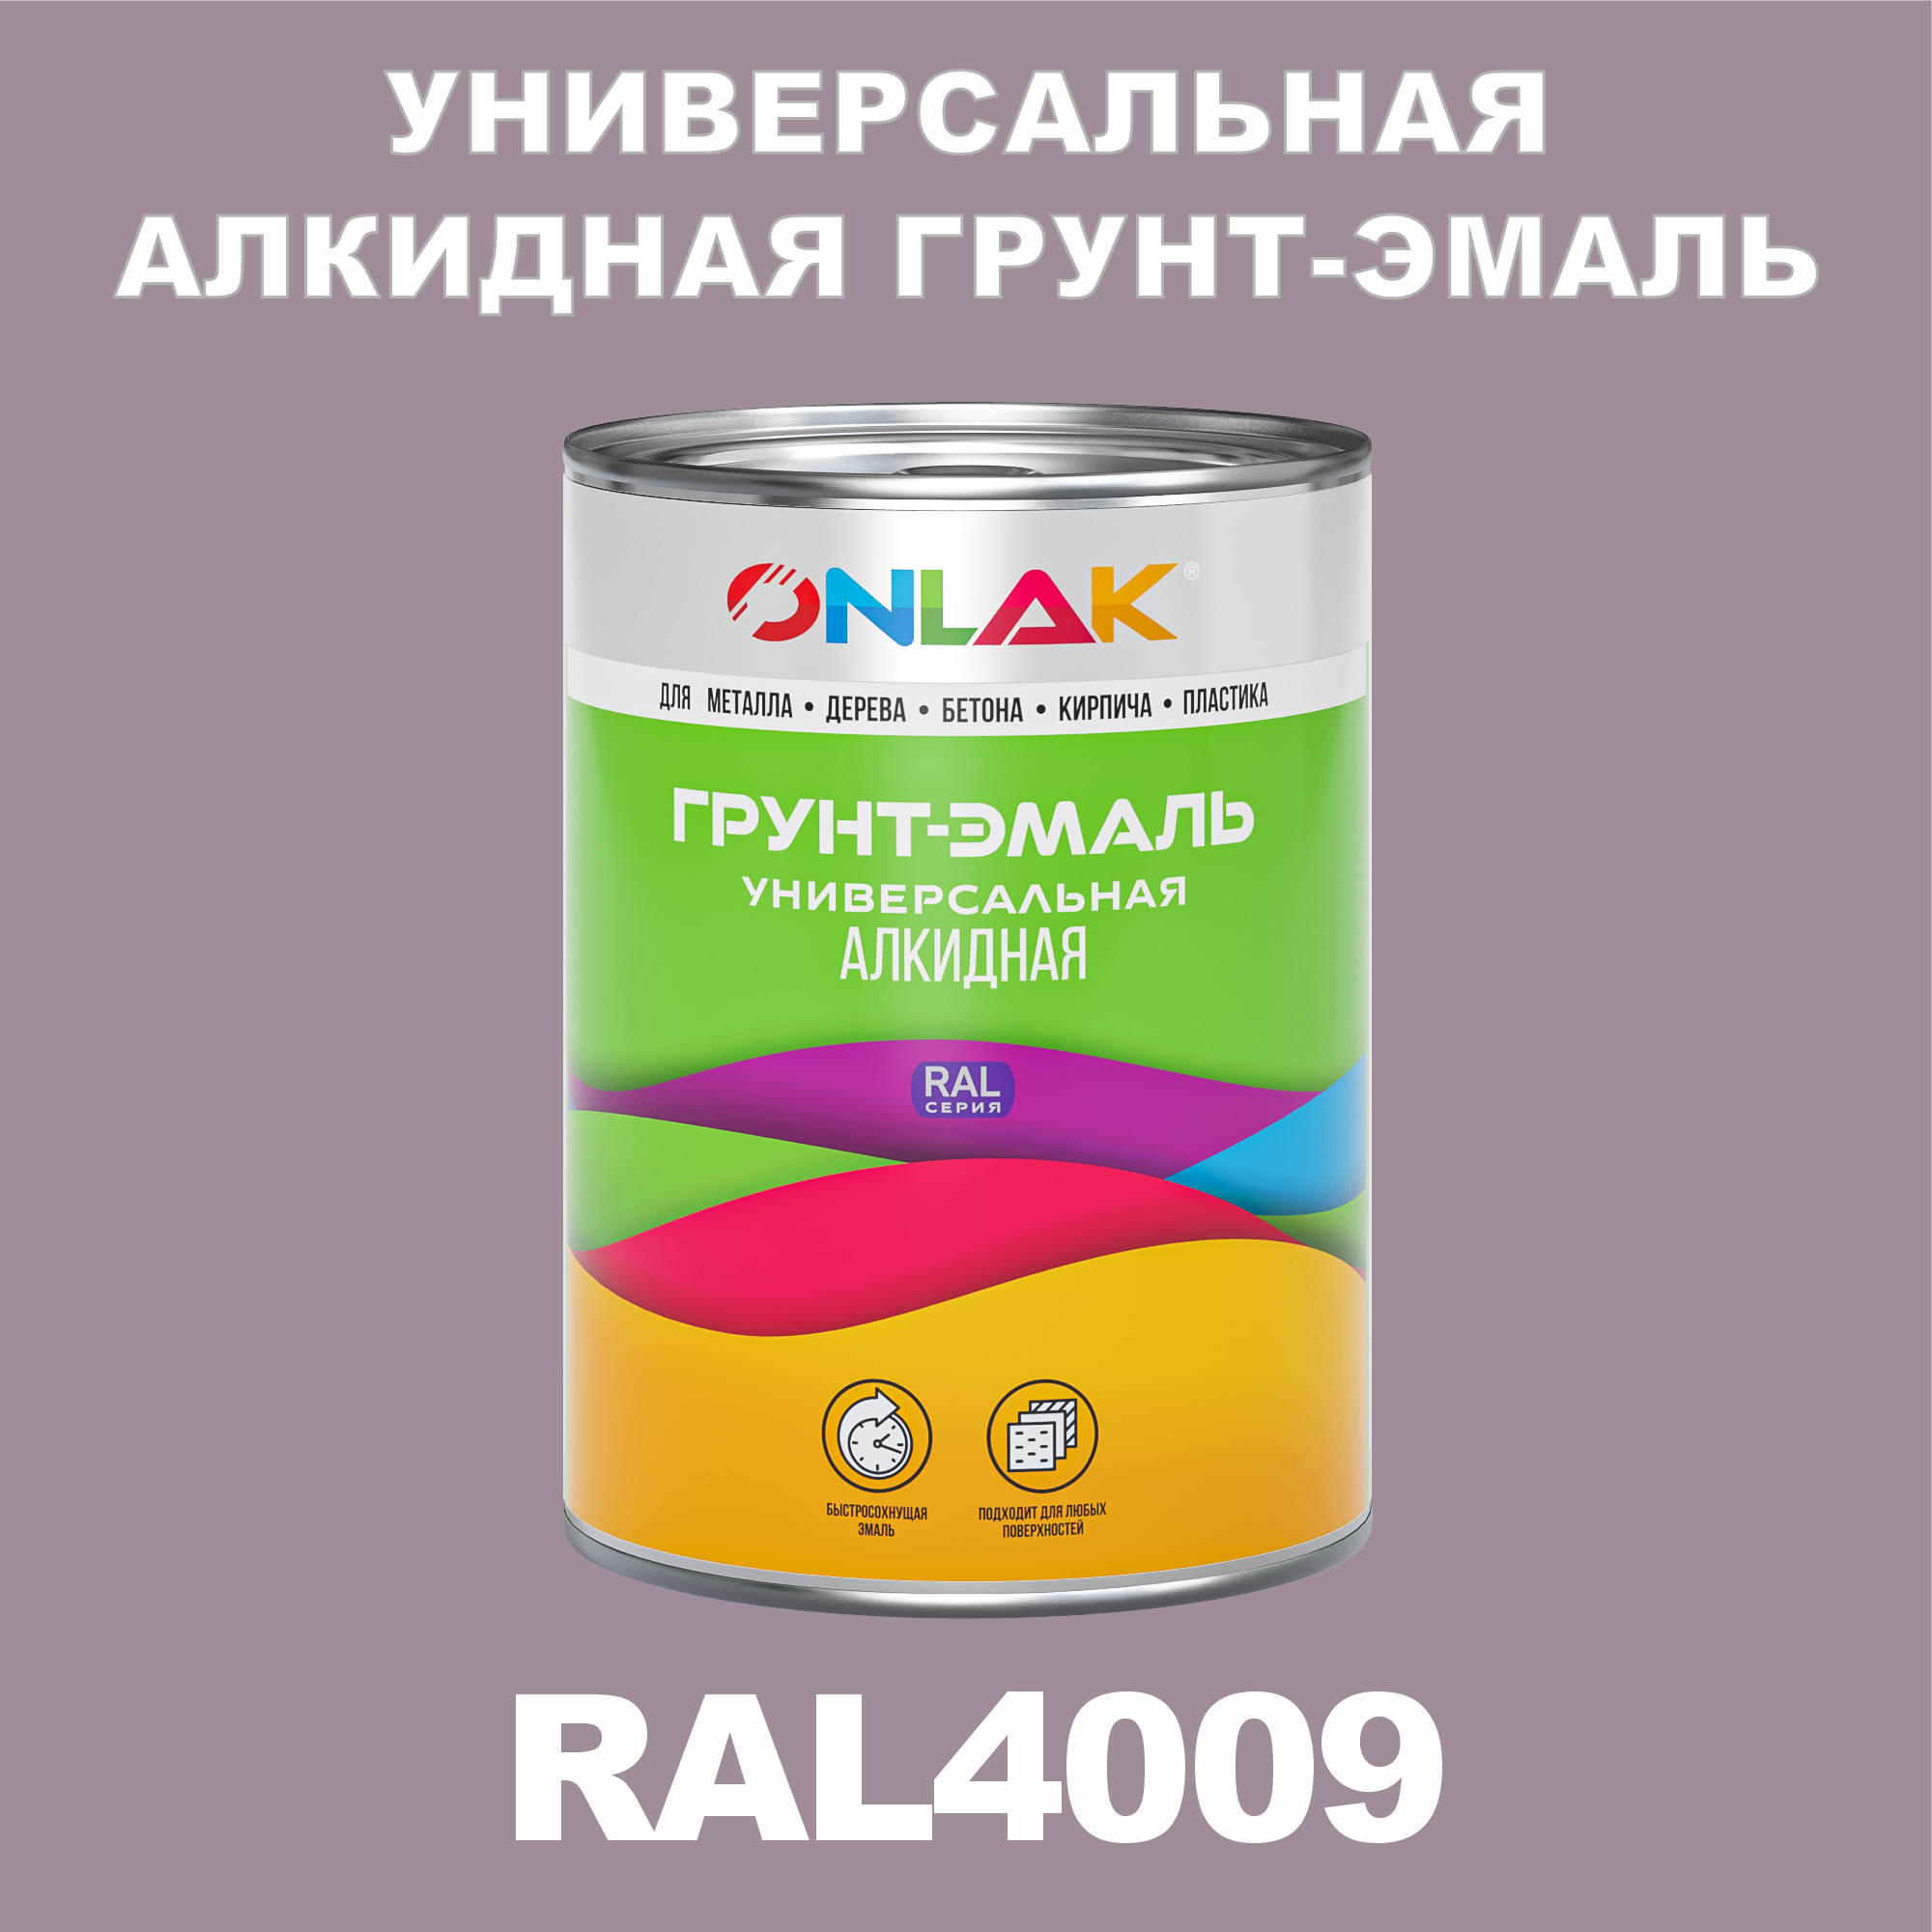 Грунт-эмаль ONLAK 1К RAL4009 антикоррозионная алкидная по металлу по ржавчине 1 кг грунт эмаль skladno по ржавчине алкидная желтая 1 8 кг